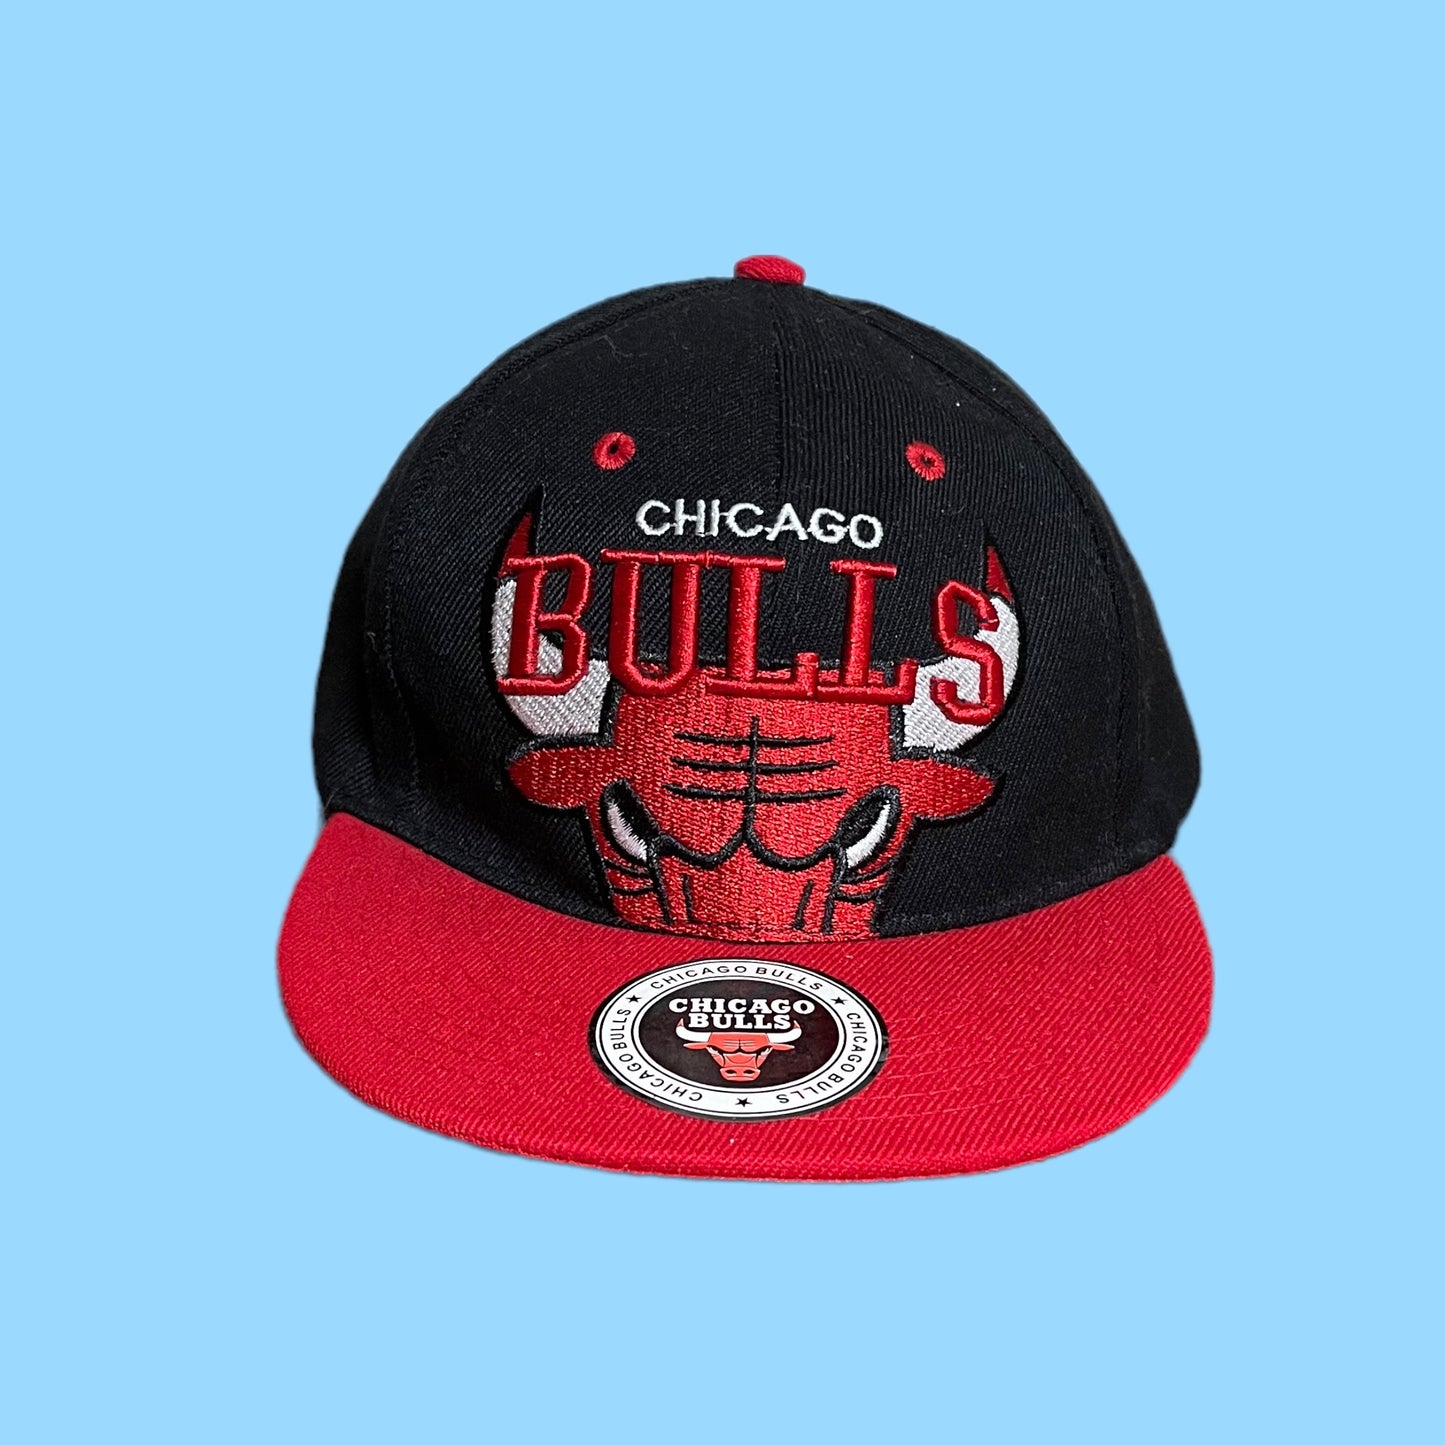 Vintage Chicago Bulls snapback - Onesize